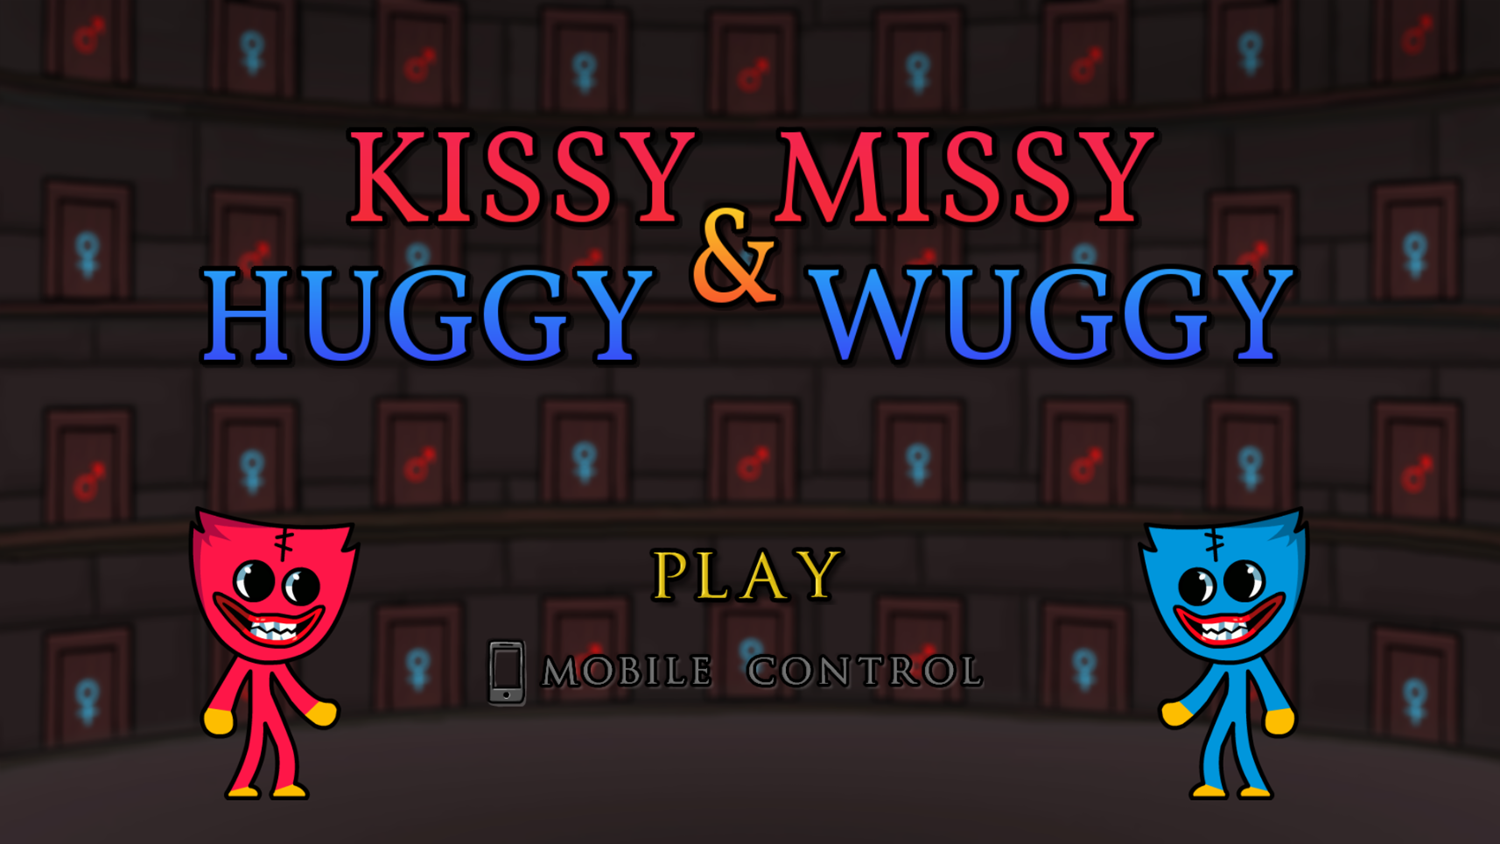 Kissy Missy and Huggy Wuggy Game Welcome Screen Screenshot.